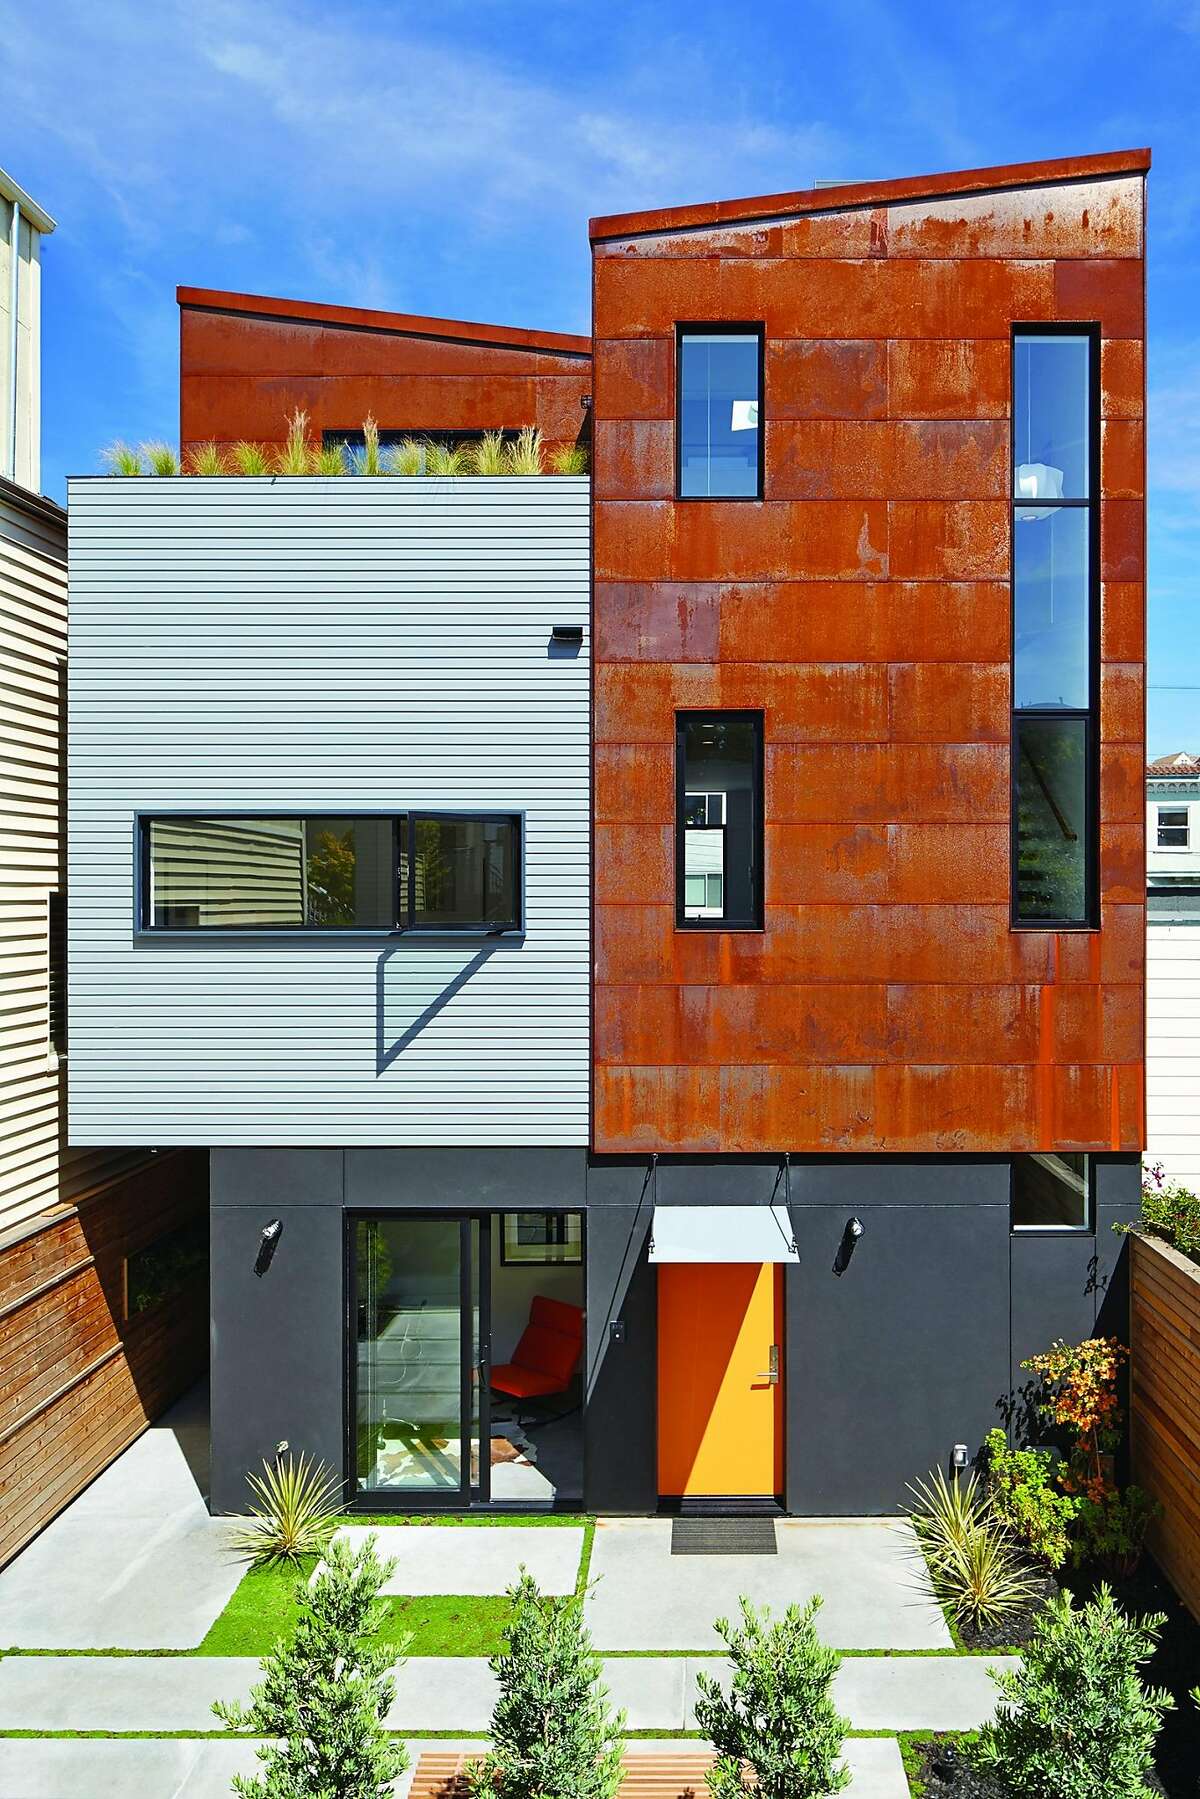 SteelHouse 1 and 2 by Zack / de Vito Architecture.